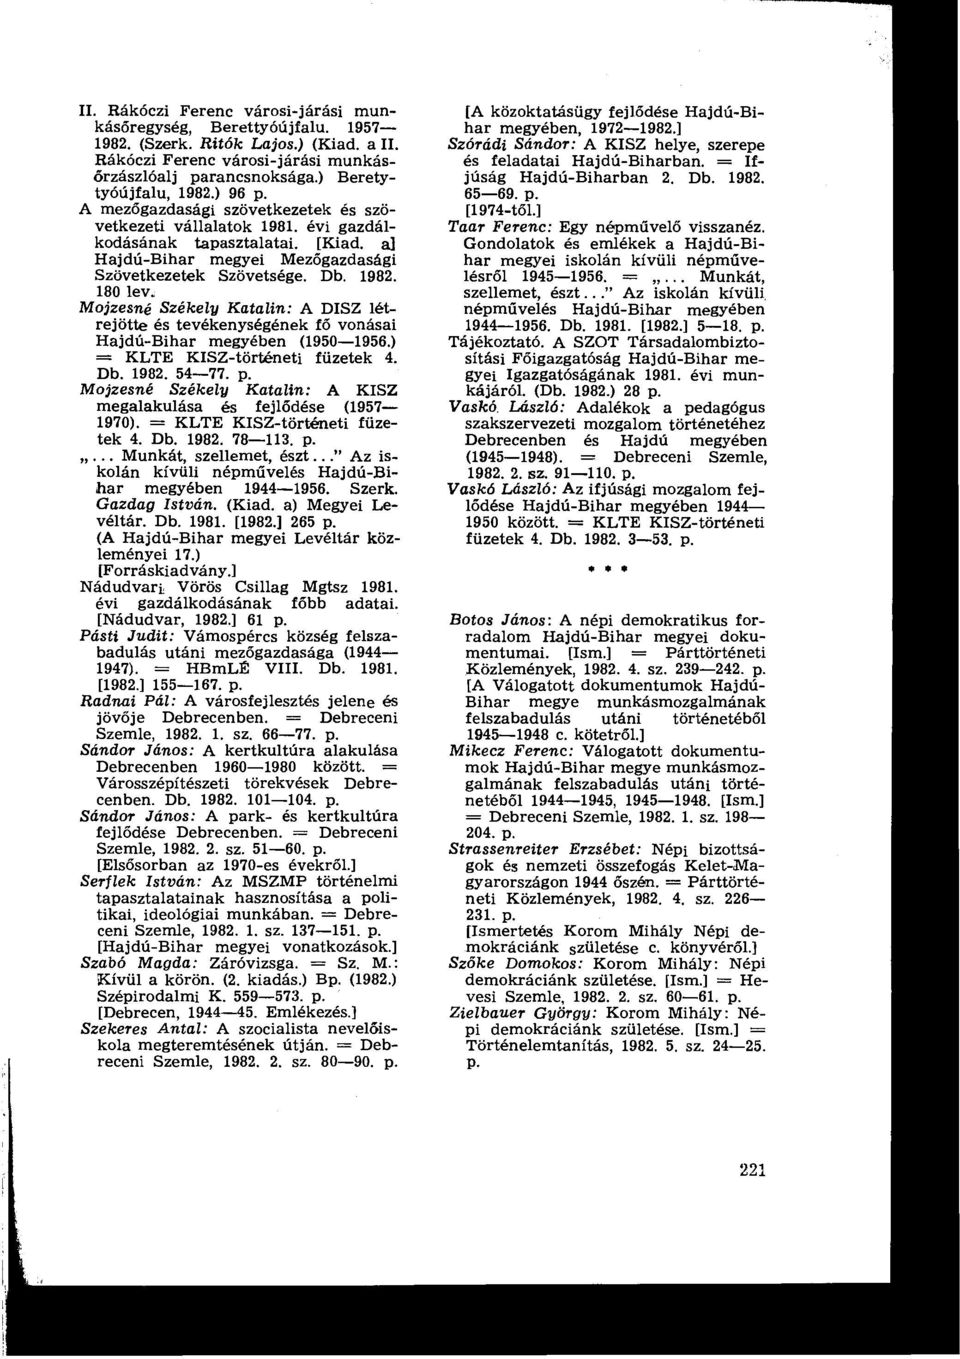 180 leve Mojzesné Székely Katalin : A DISZ létrejötte és tevékenységének fő vonásai Hajdú-Bihar megyében (1950-1956.) = KLTE KISZ-történeti füzetek 4. Db. 1982. 54-77. p.